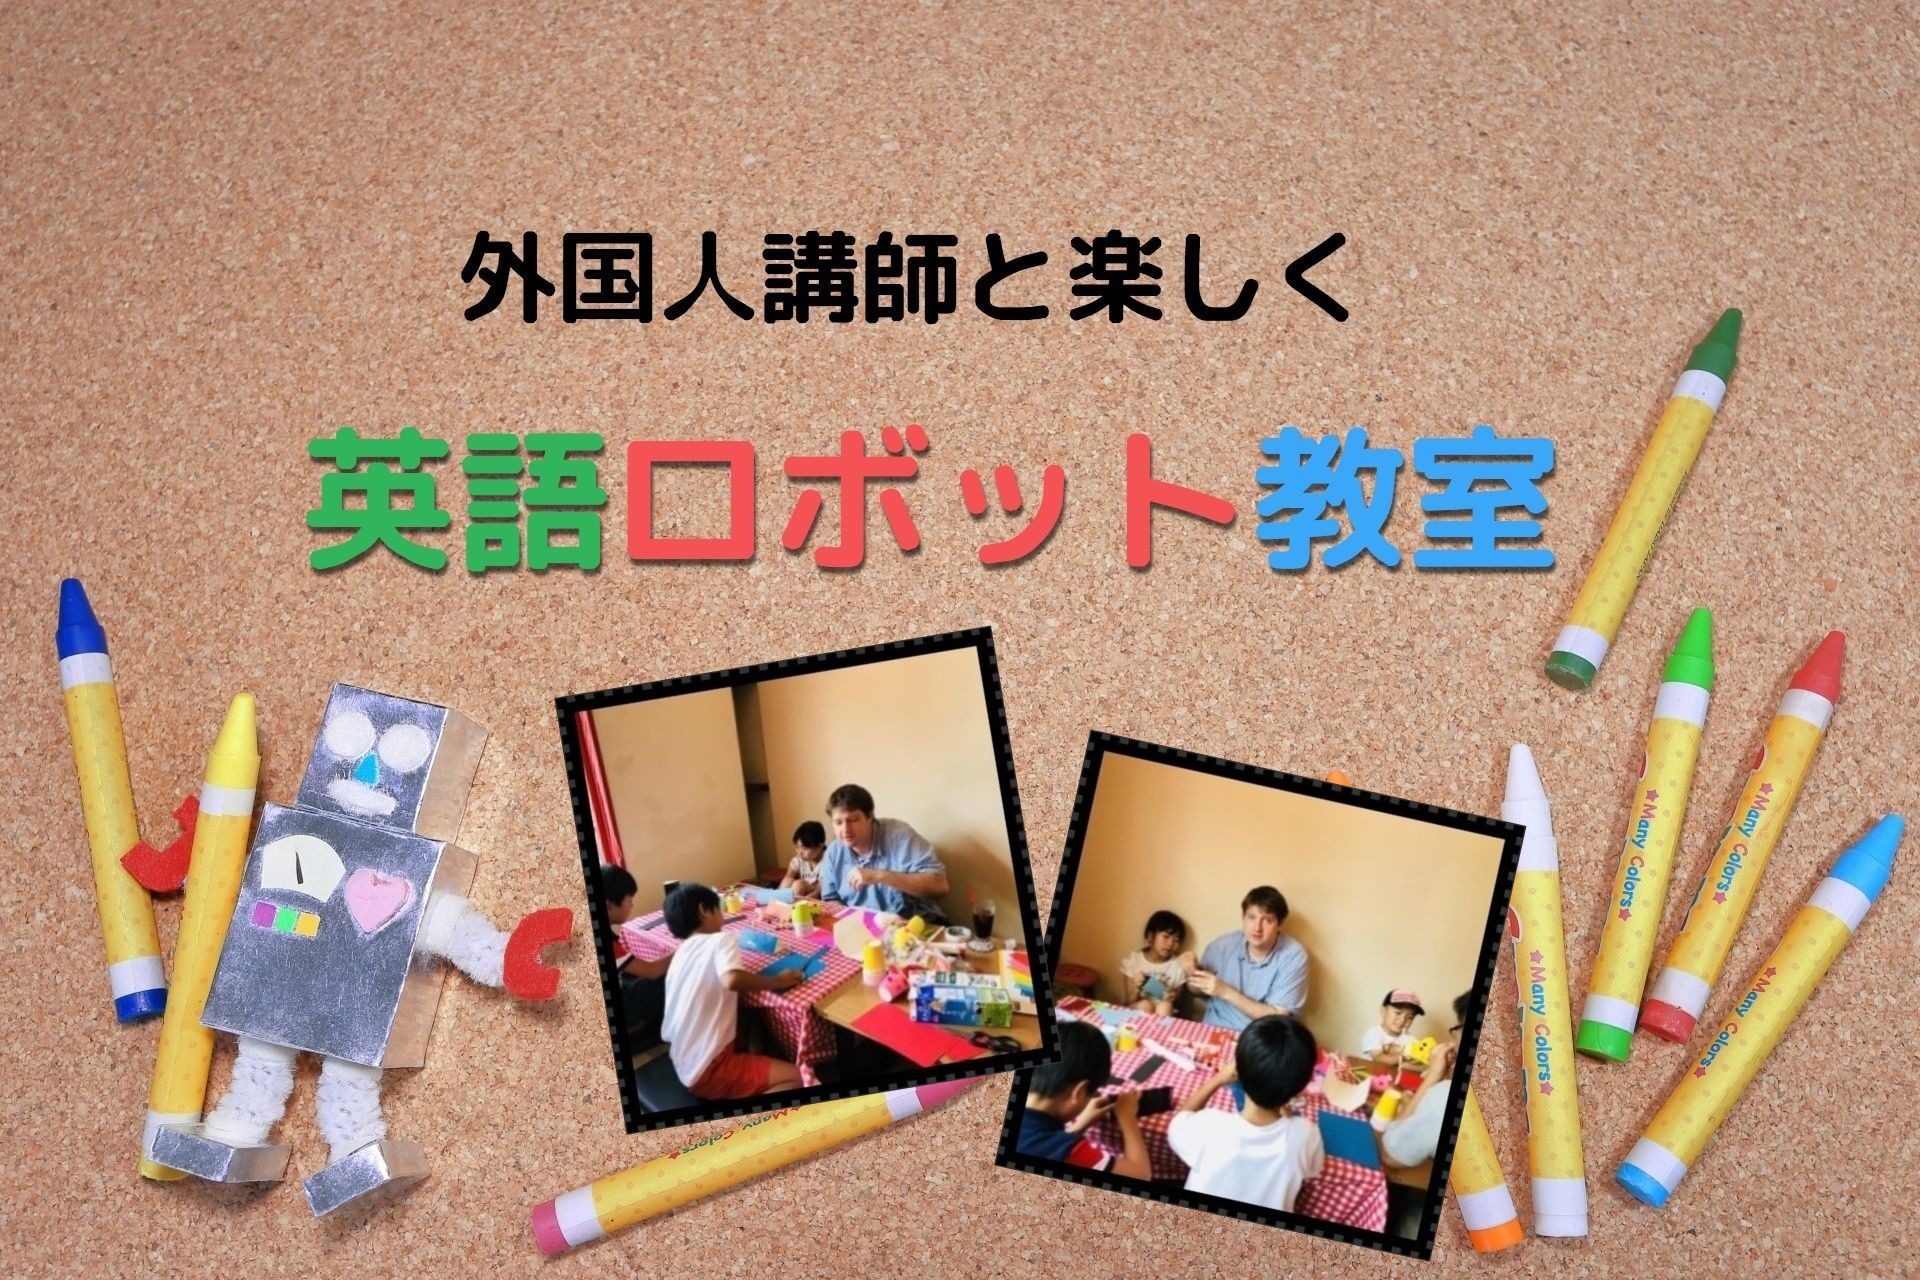 ロボット教室 大阪 英語